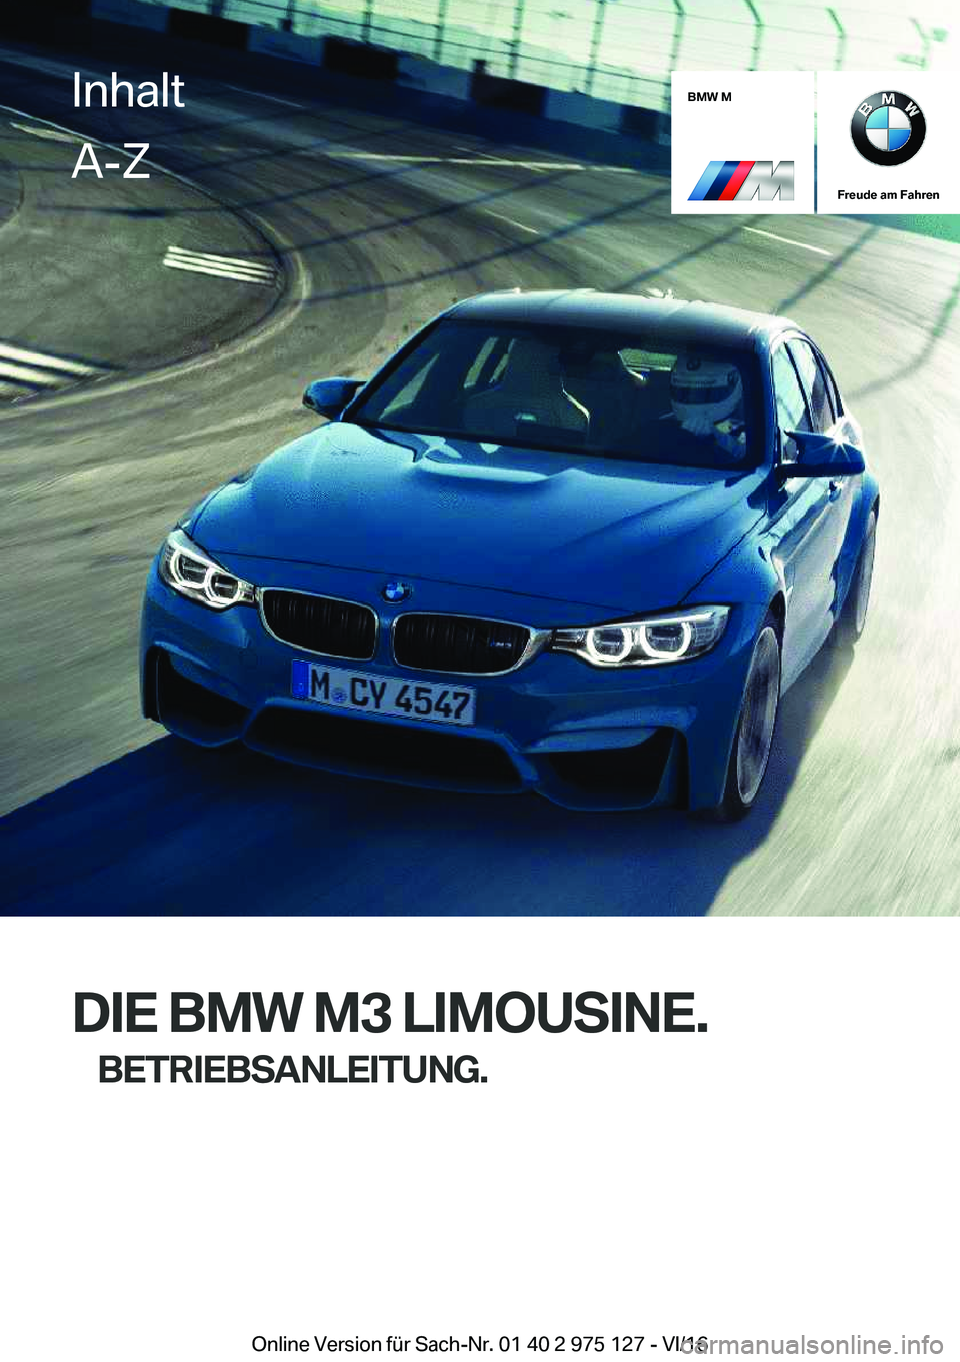 BMW M3 2017  Betriebsanleitungen (in German) �B�M�W��M
�F�r�e�u�d�e��a�m��F�a�h�r�e�n
�D�I�E��B�M�W��M�3��L�I�M�O�U�S�I�N�E�.�B�E�T�R�I�E�B�S�A�N�L�E�I�T�U�N�G�.
�I�n�h�a�l�t�A�-�Z
�O�n�l�i�n�e� �V�e�r�s�i�o�n� �f�